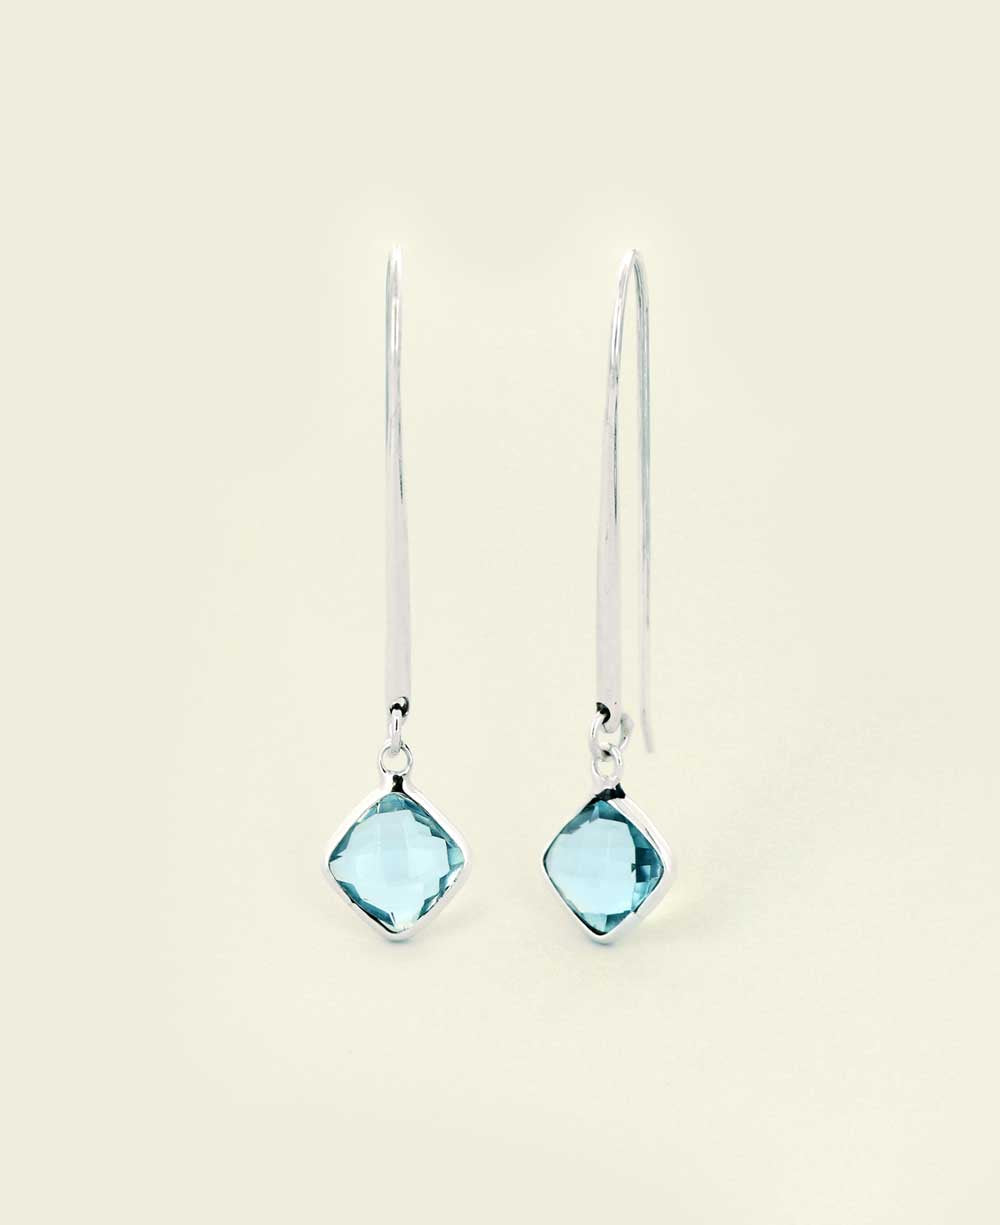 Blue Topaz threader earrings